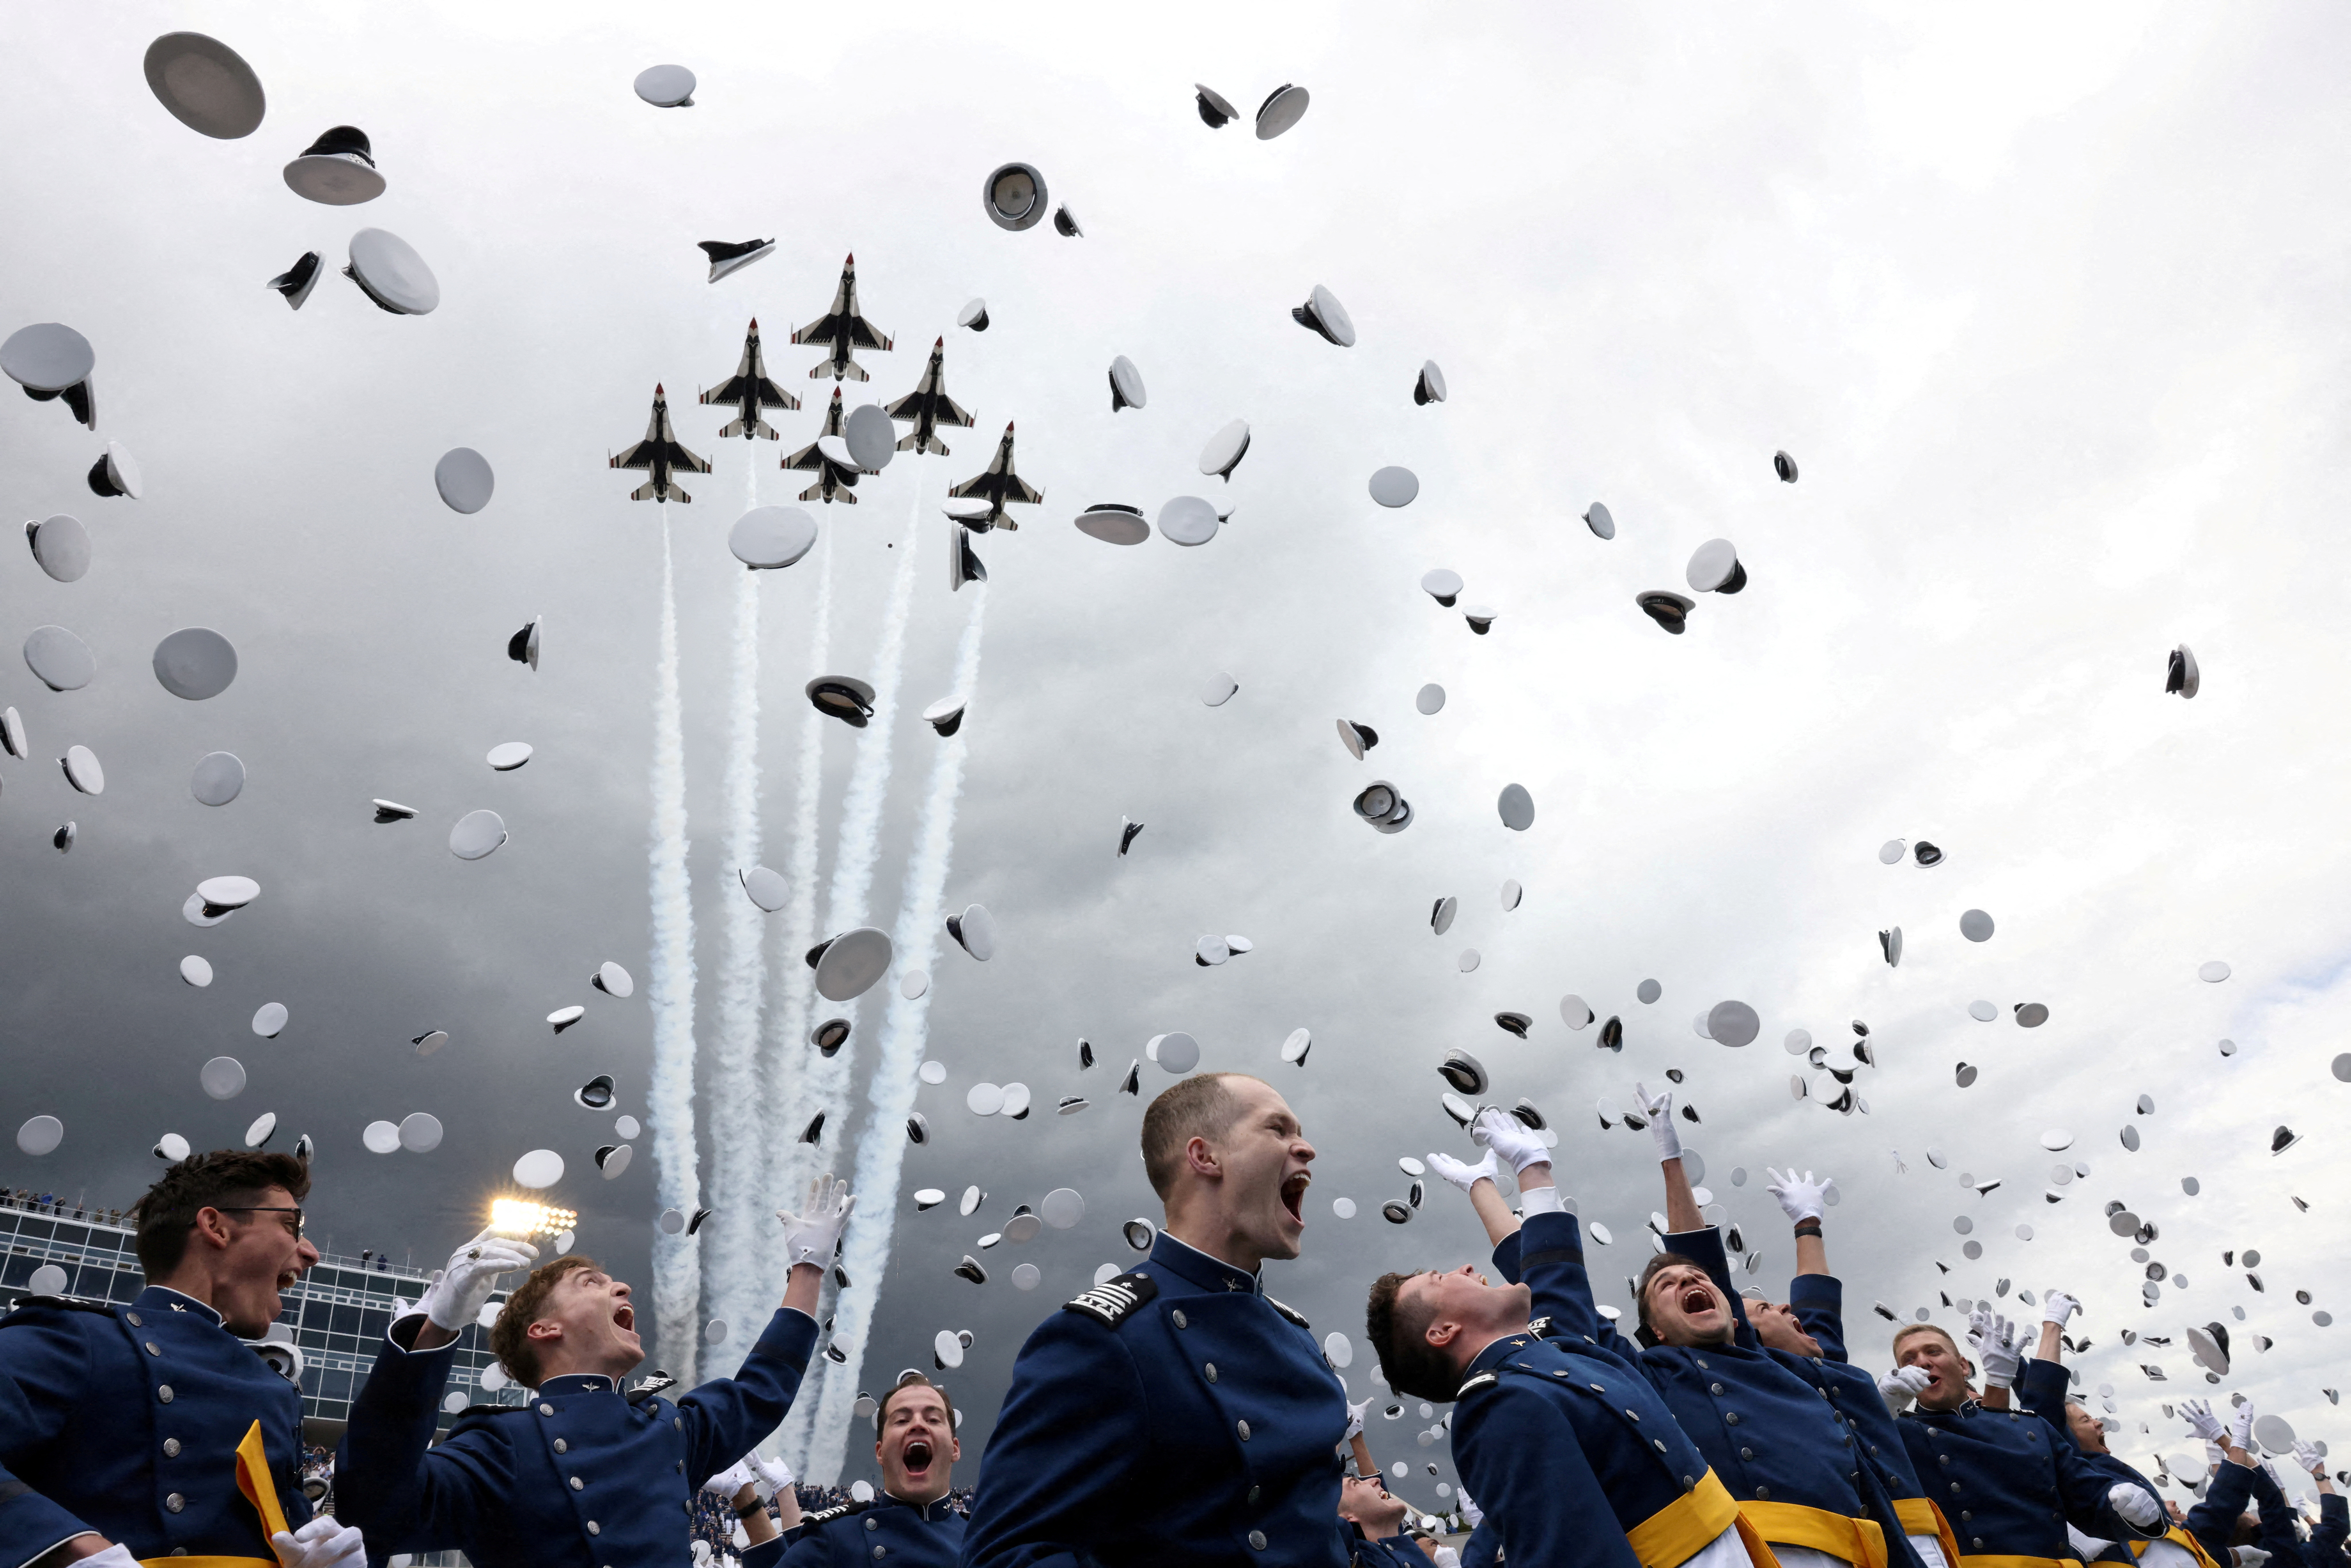 USAF Academy graduation ceremony in Colorado